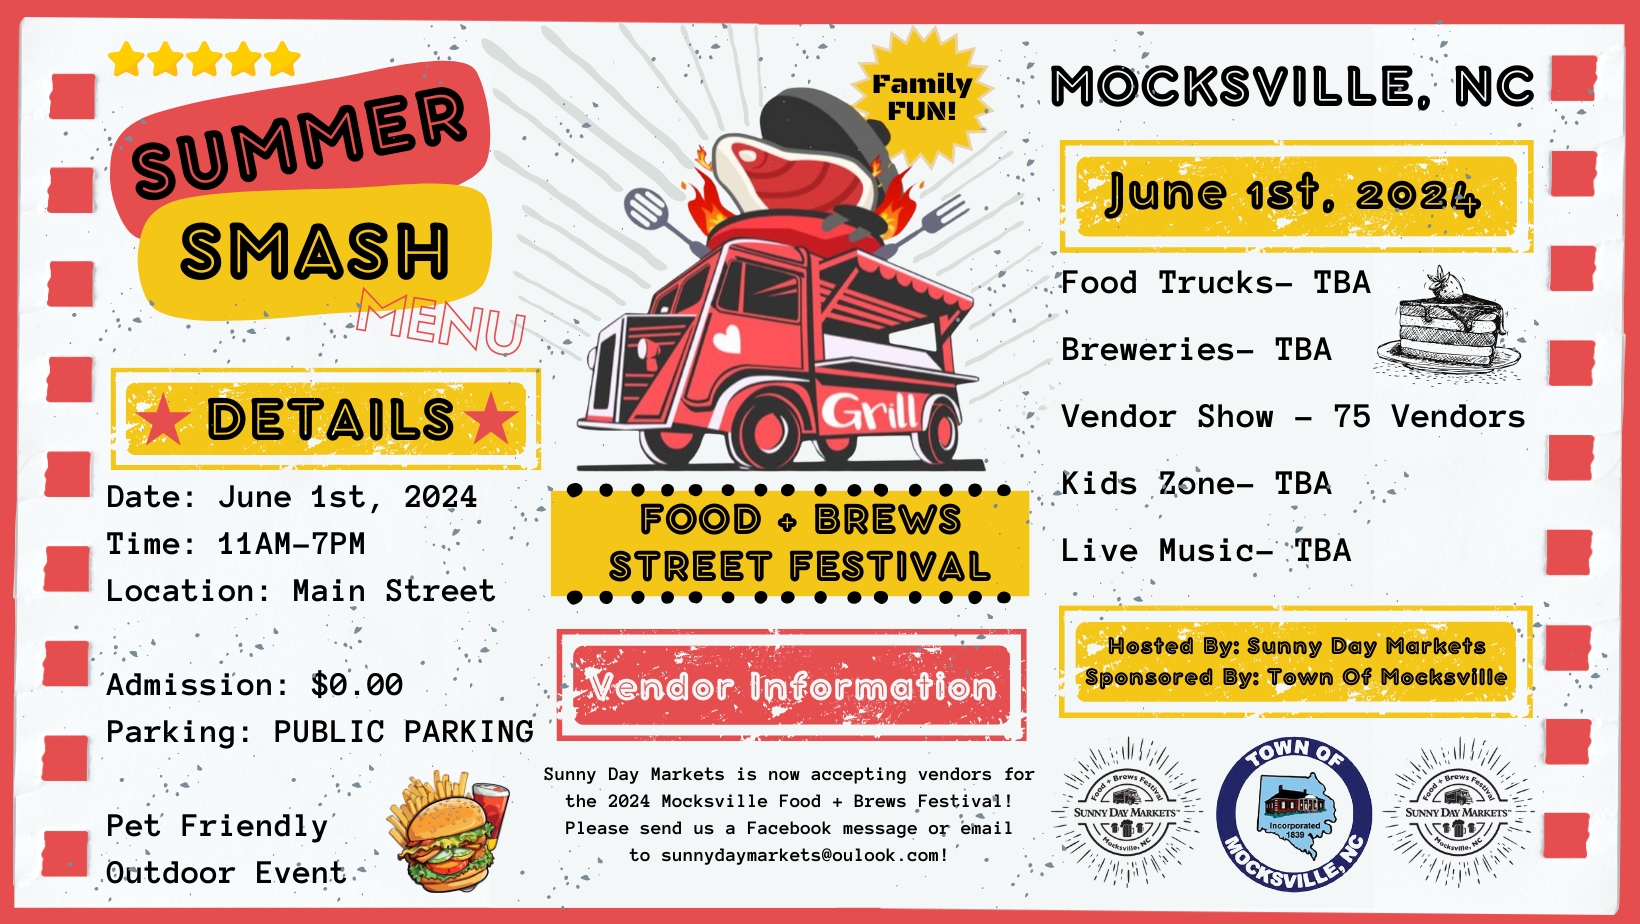 Mocksville Food & Brews Festival cover image